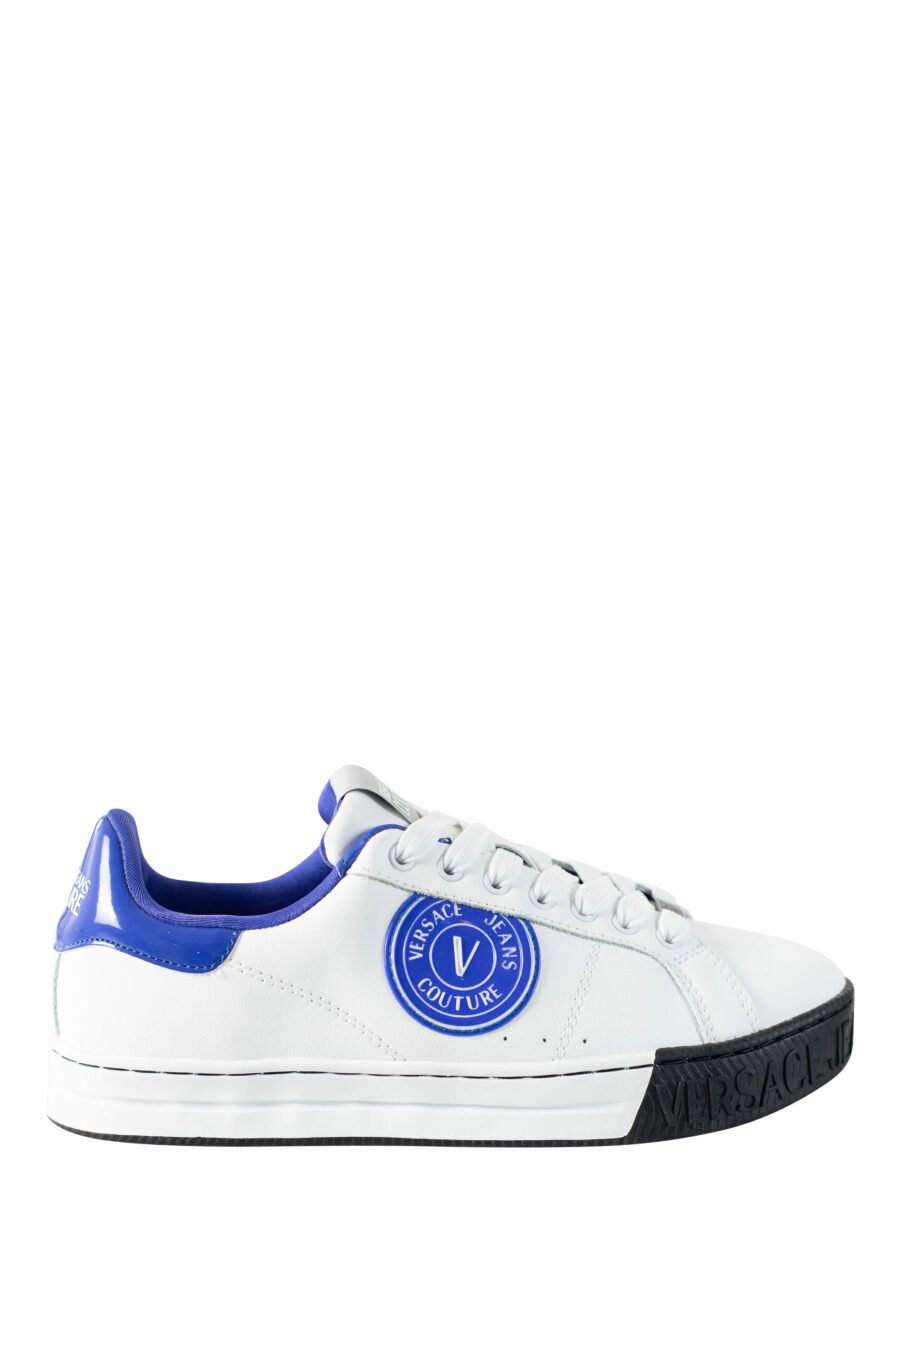 Zapatillas blancas con azul y logo circular - IMG 4502